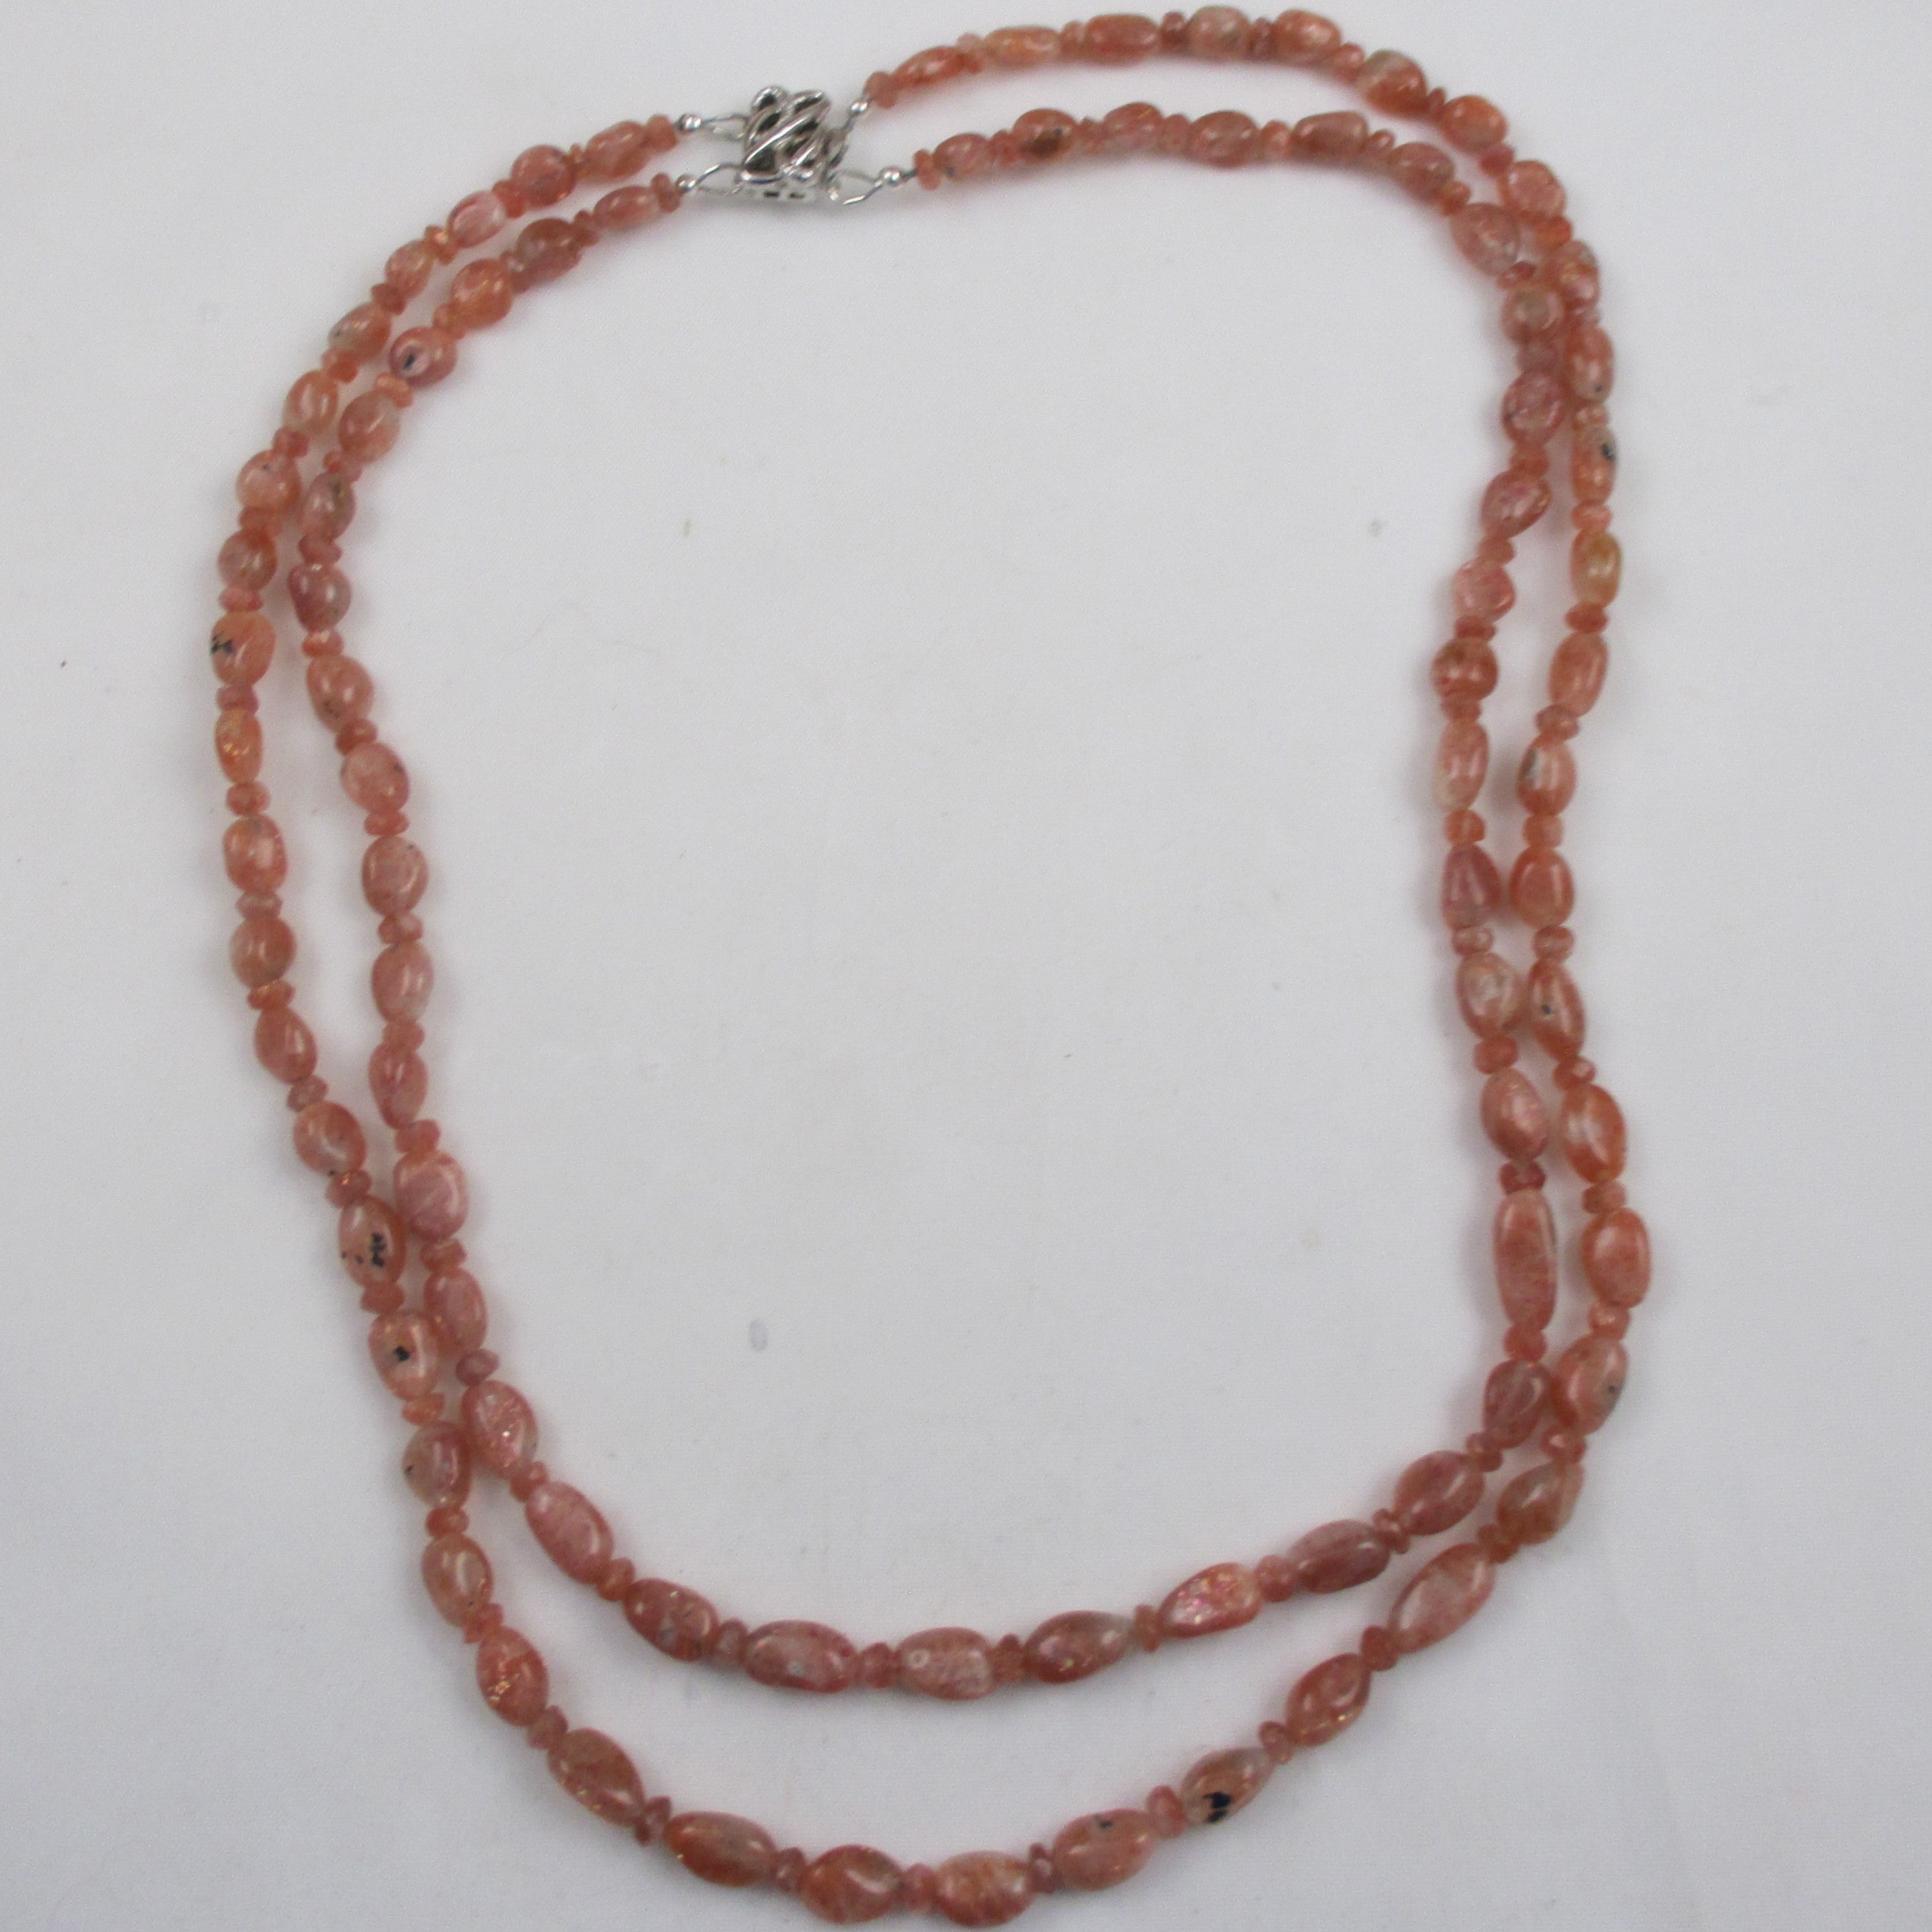 Sunstone Gemstone Necklace Double Strand